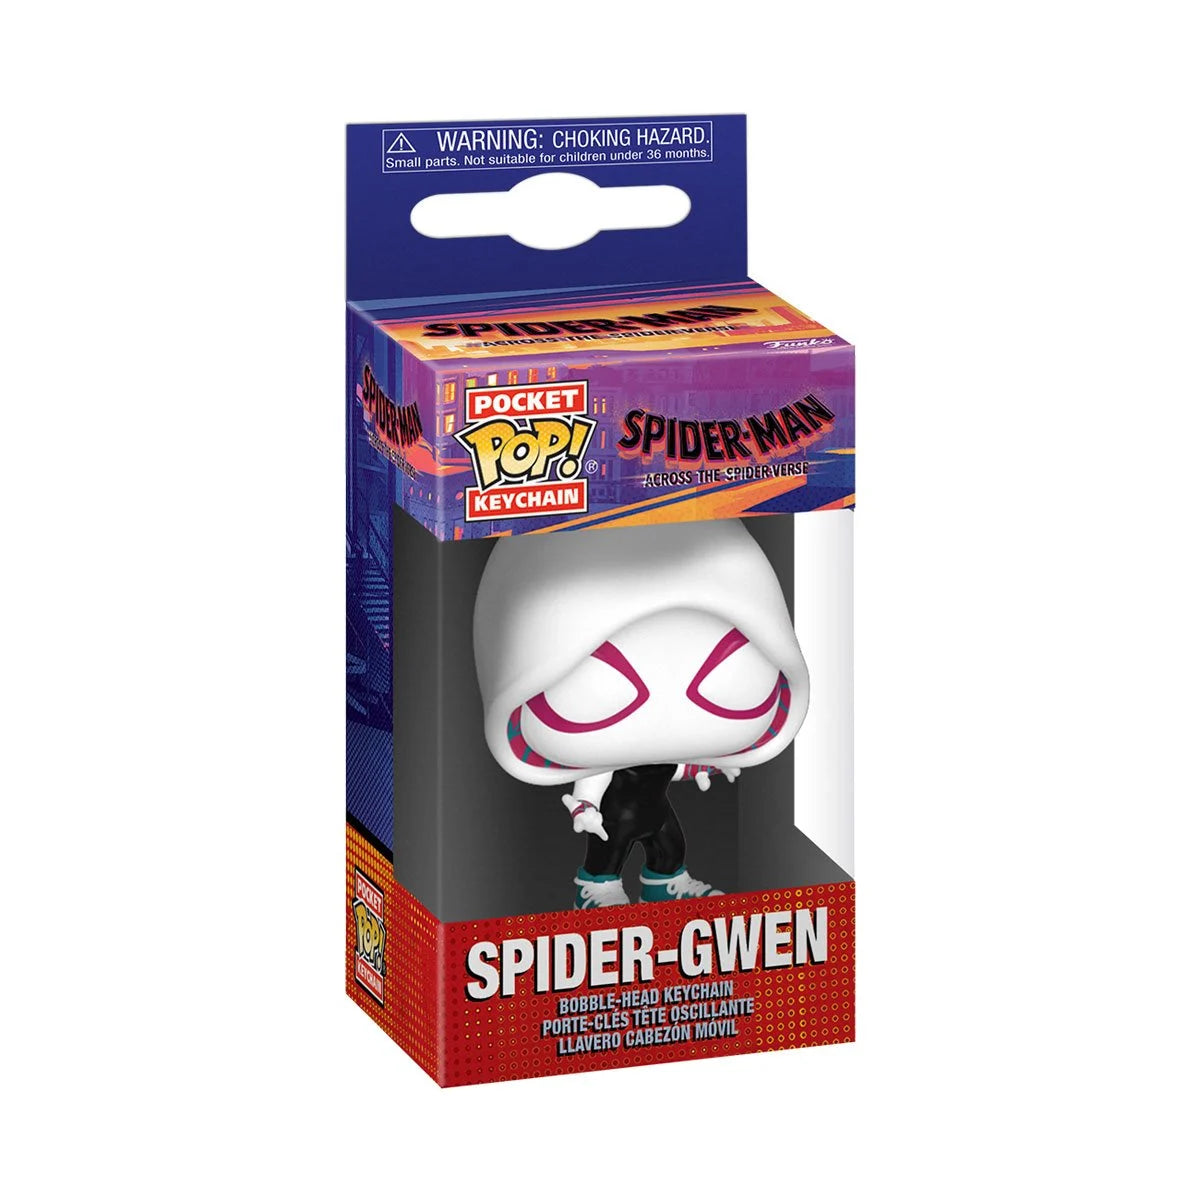 Spider-Gwen Across the Spider-Verse Spider-Man Pocket Pop! Key Chain